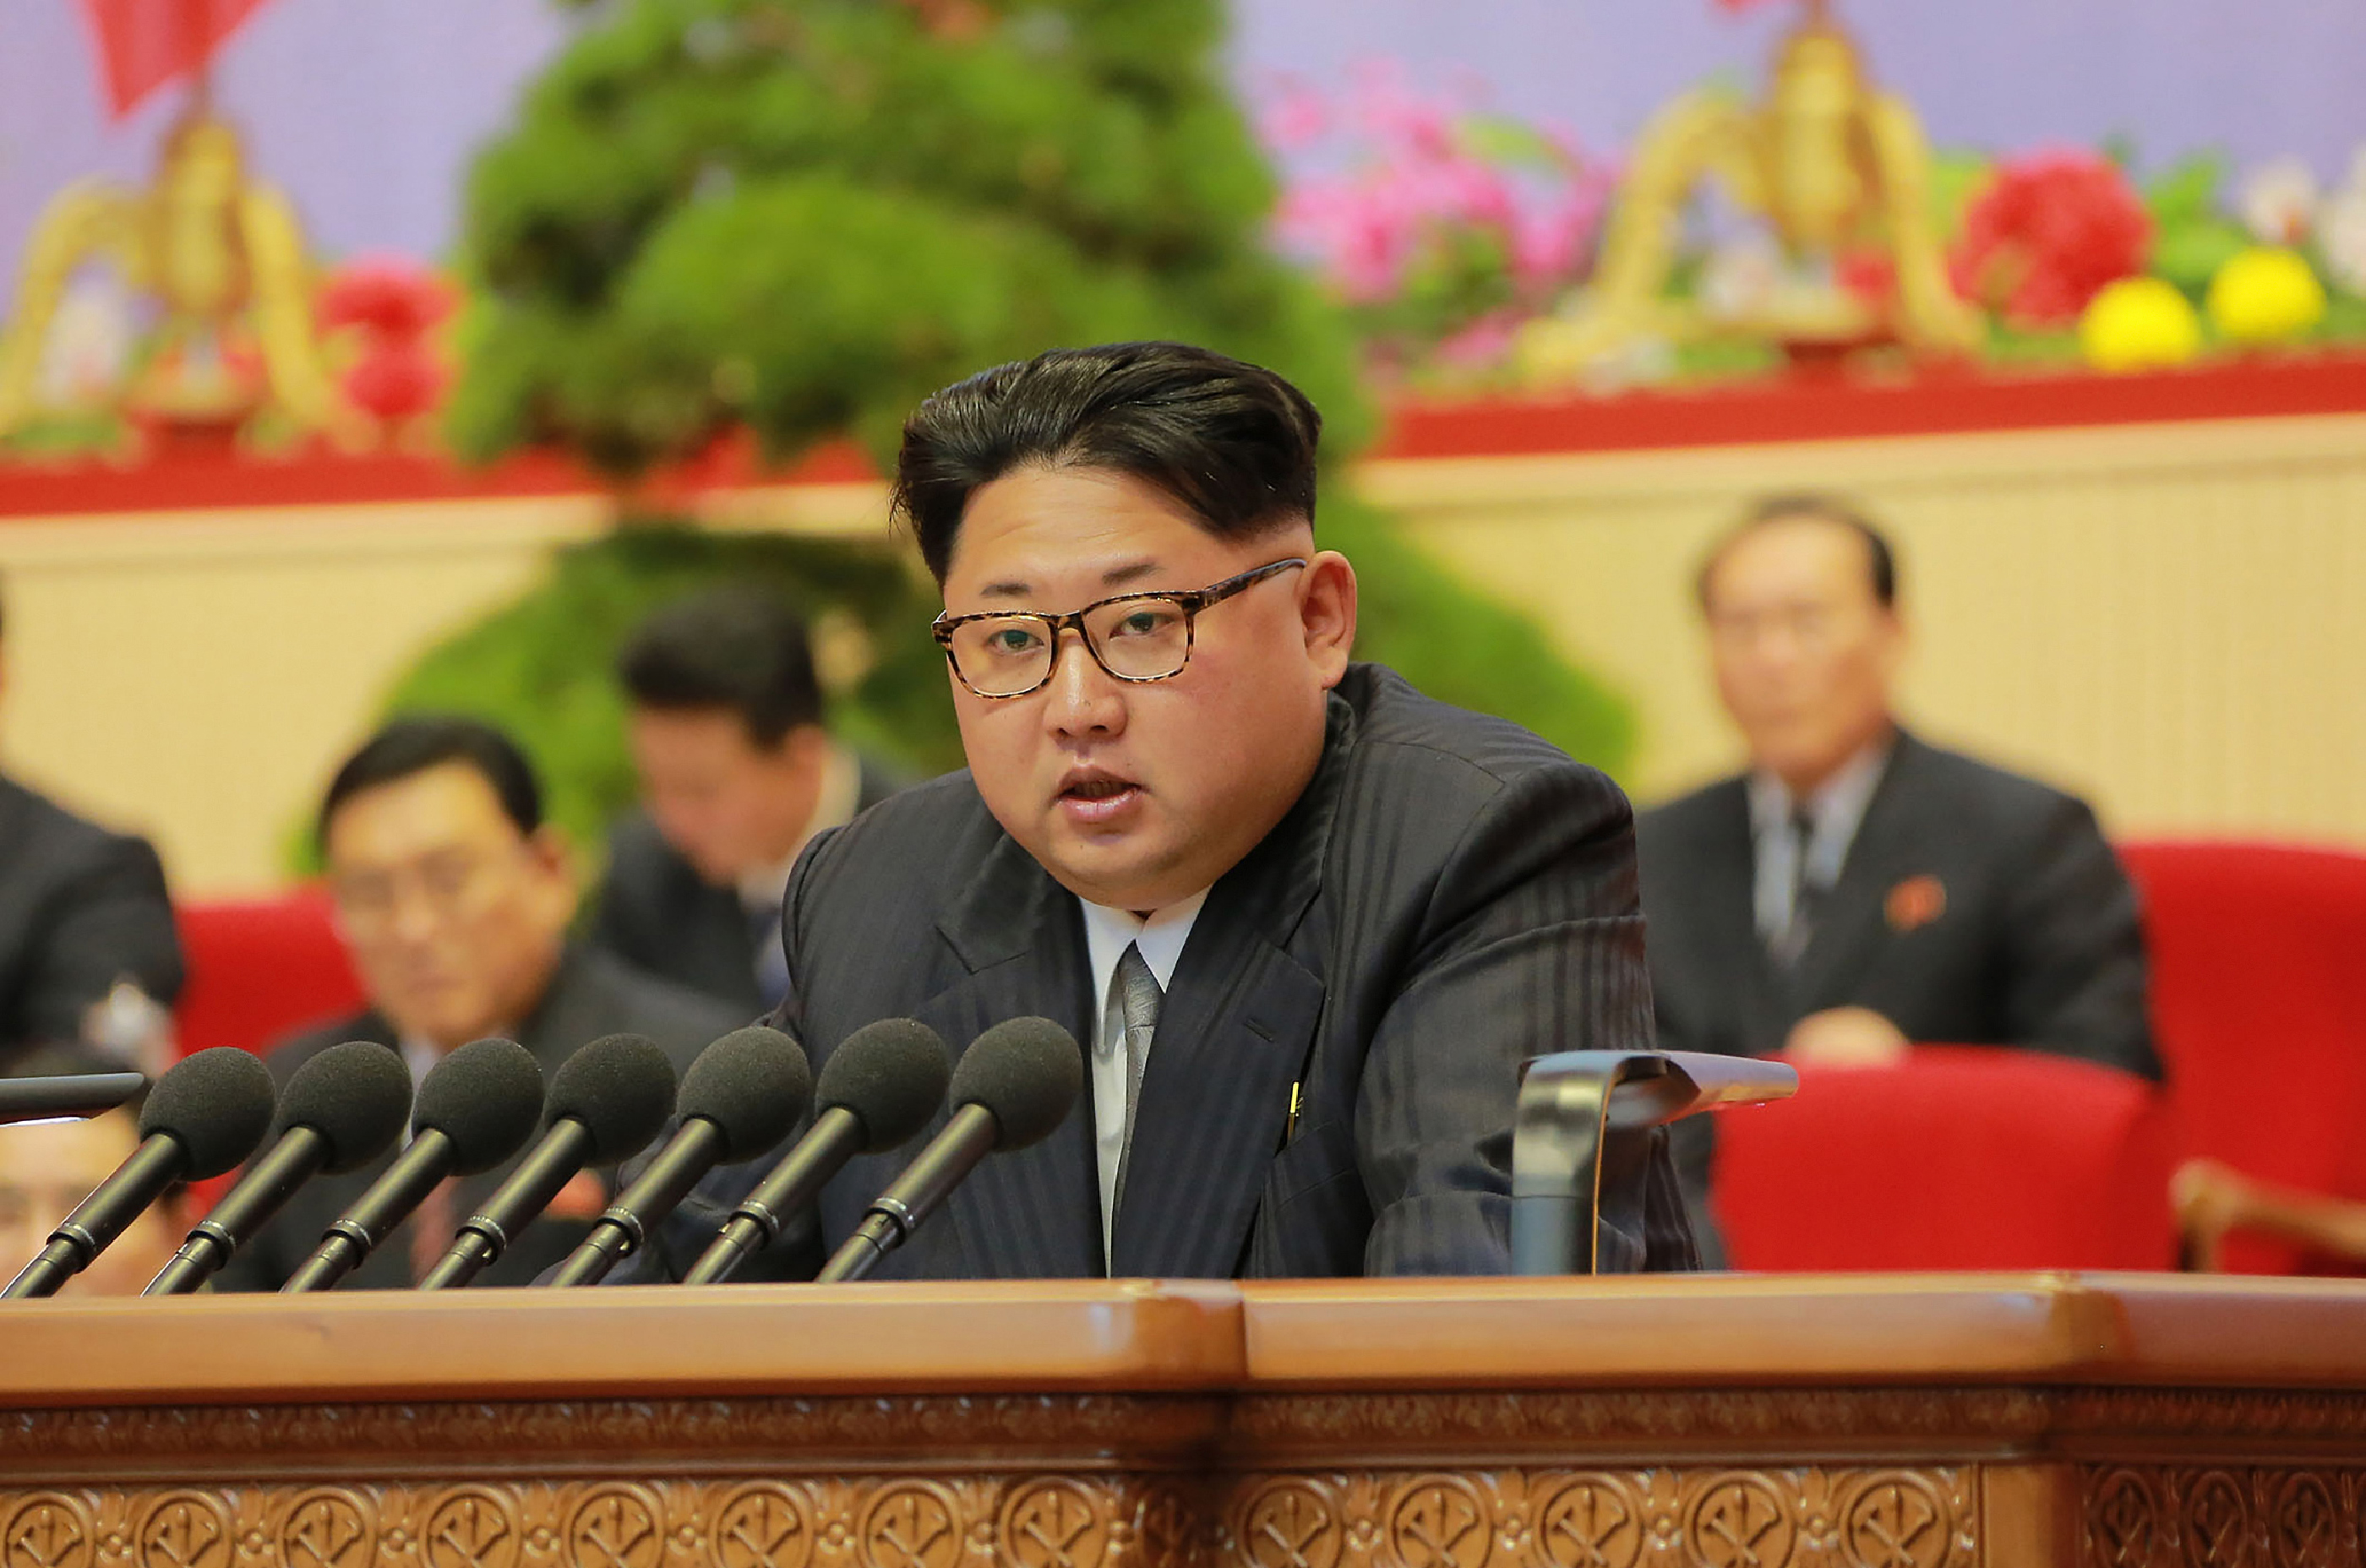 سلامتی کونسل نے شمالی کوریا میں نیوکلیائی میزائل کے ناکام تجربے کی مذمت کی